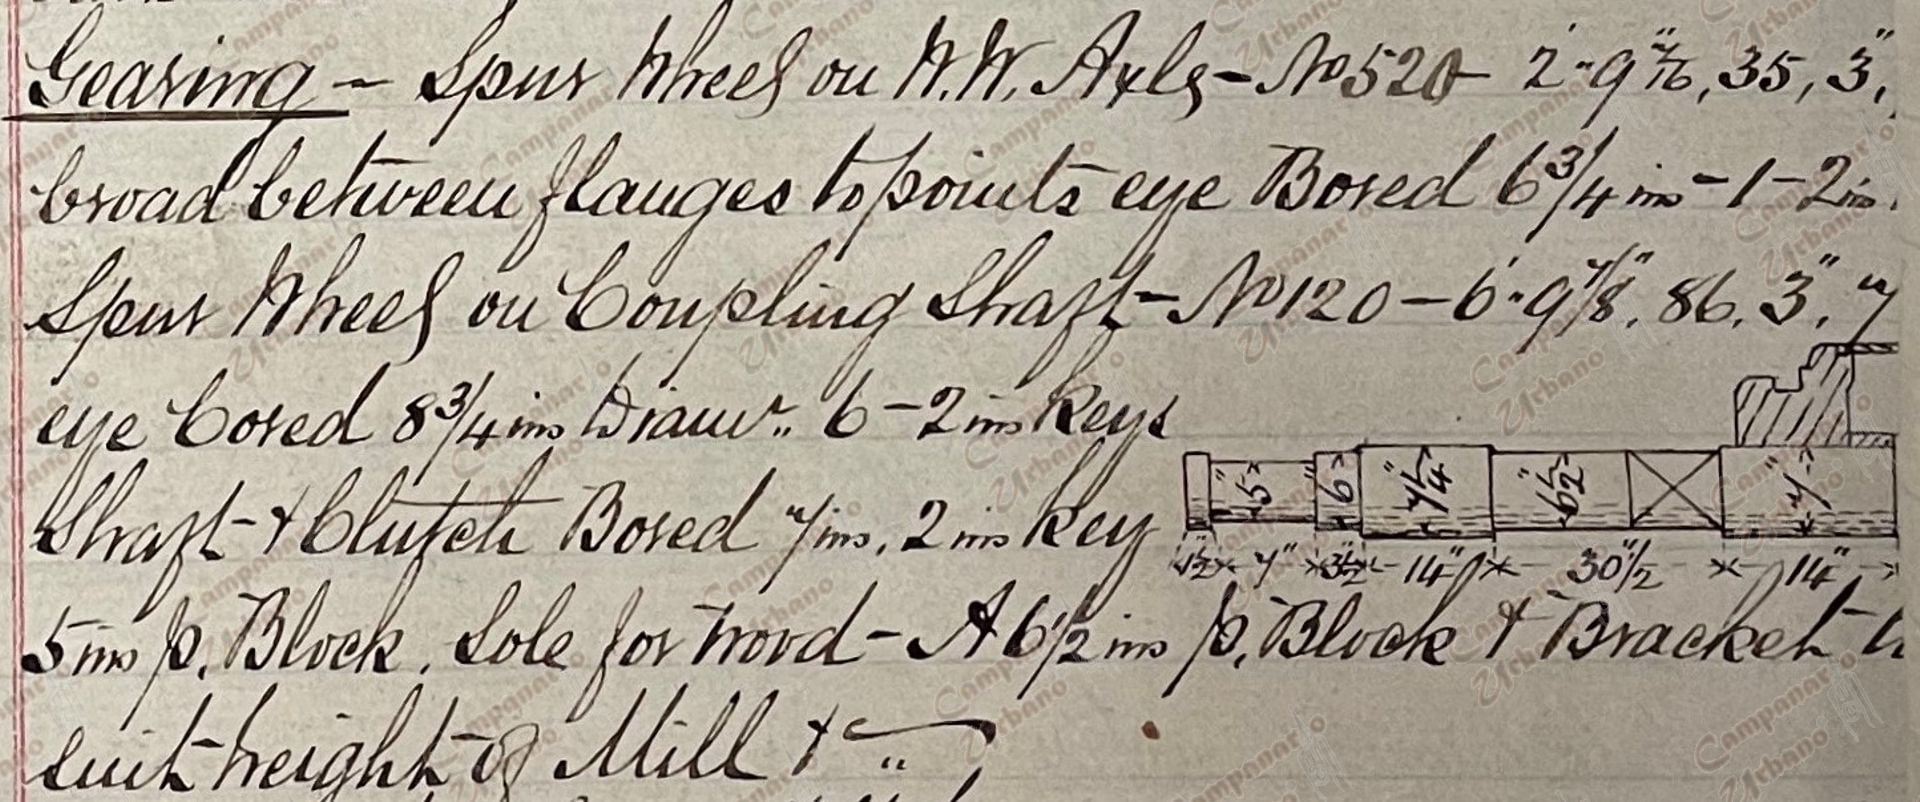 Libro de Órdenes de W. & A. McOnie, Glasgow, Escocia, 1869. En este libro se observa la orden de compra del ingenio de trapiche de la antigua Hacienda La Concepción de Guarenas. "Engranajes - Rueda dentada en Ejes W.W. - No 520 – 2 pulgadas - 9 7/16 pulgadas, 35 pulgadas, 3 pulgadas, 7 1/2 pulgadas de ancho entre bridas y puntas. Ojo perforado de 6 3/4 pulgadas - llaves de 1 a 2 pulgadas. Rueda dentada en el eje de acoplamiento - No 120 - 6 pulgadas - 9 7/8 pulgadas, 86 pulgadas, 3 pulgadas, 7 pulgadas. Ojo perforado de 8 ¾ pulgadas. Eje de la clavija + embrague de 7 pulgadas y 2 pulgadas. Bloque de 5 pulgadas, suela para madera. Un bloque de 6 ½ pulgadas + soporte para adaptarse a la altura del molino".